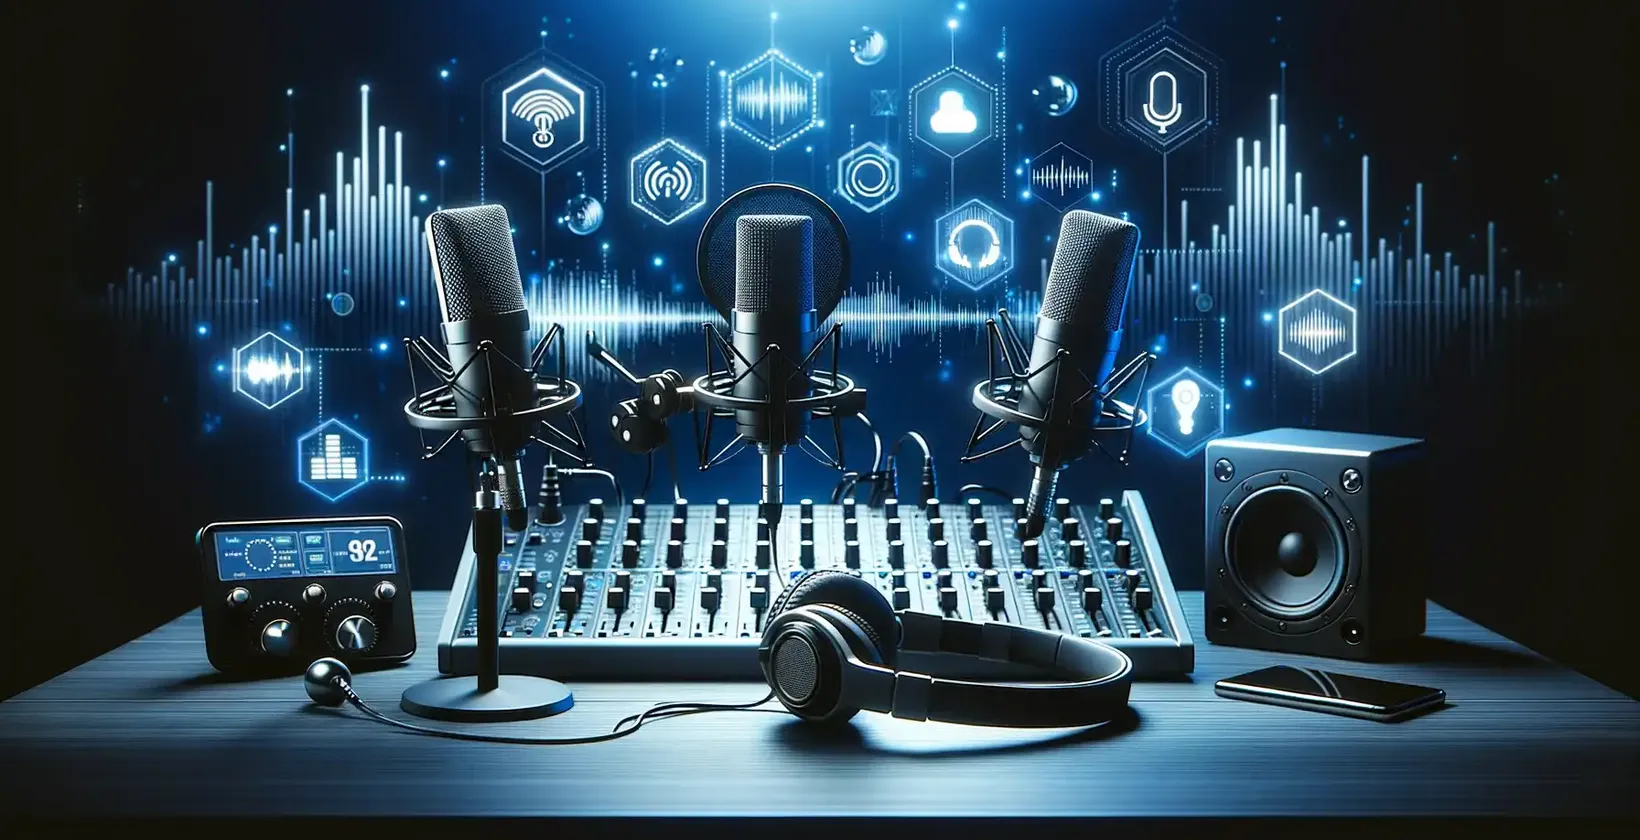 Equipo de audio y micrófono colocados sobre una mesa para transcribir podcasts, una estrategia para atraer a más clientes.